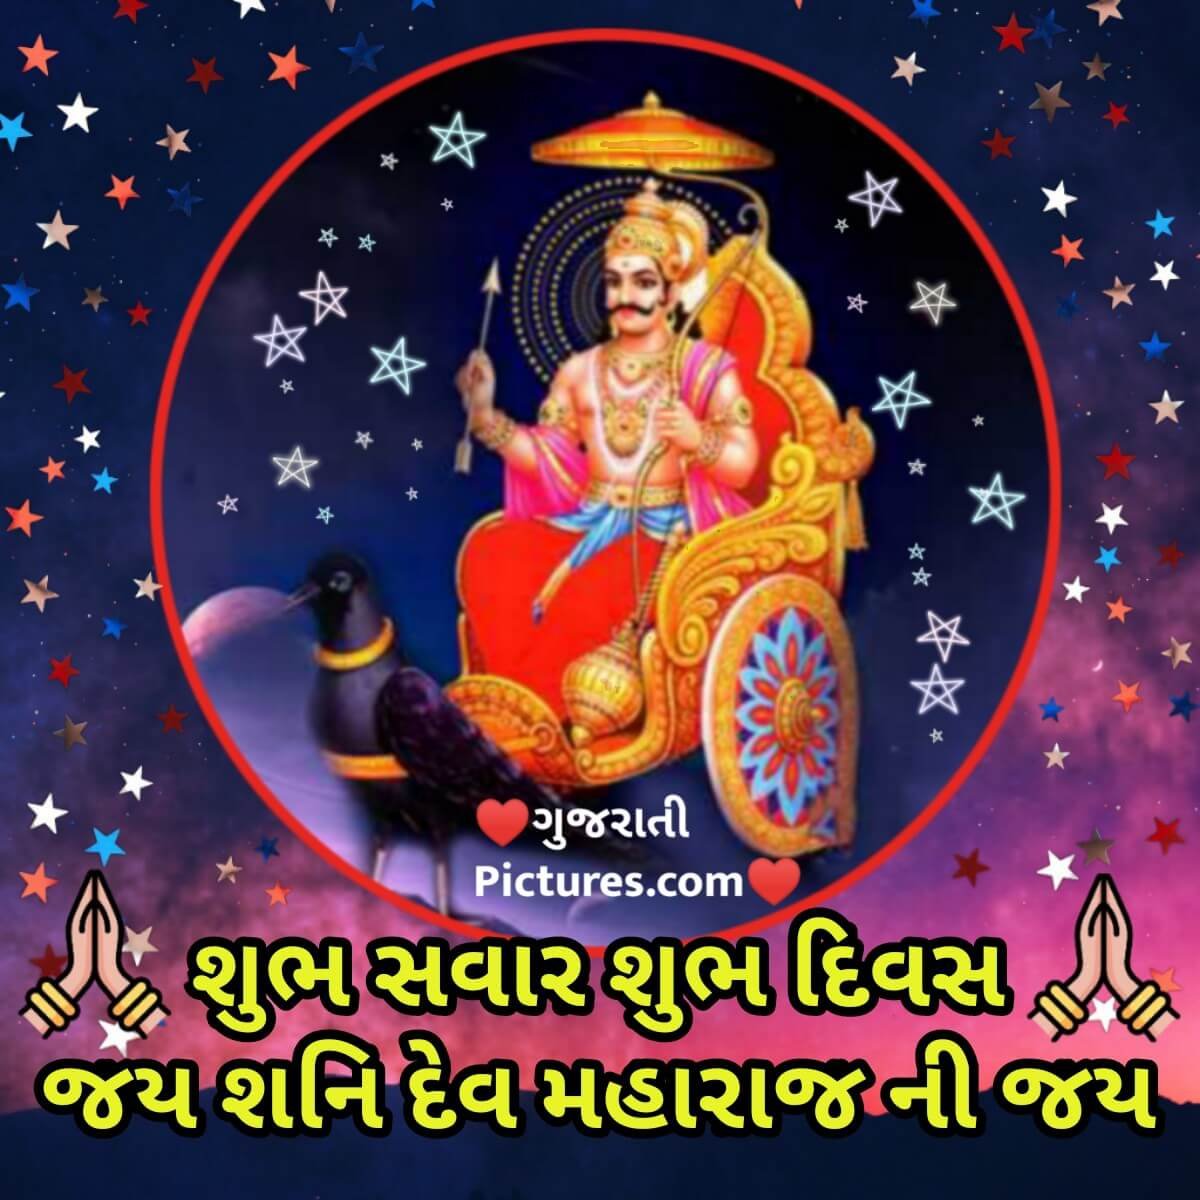 Shubh Savar Jai Shani Dev Maharaj Ni Jai Gujaratipictures Com